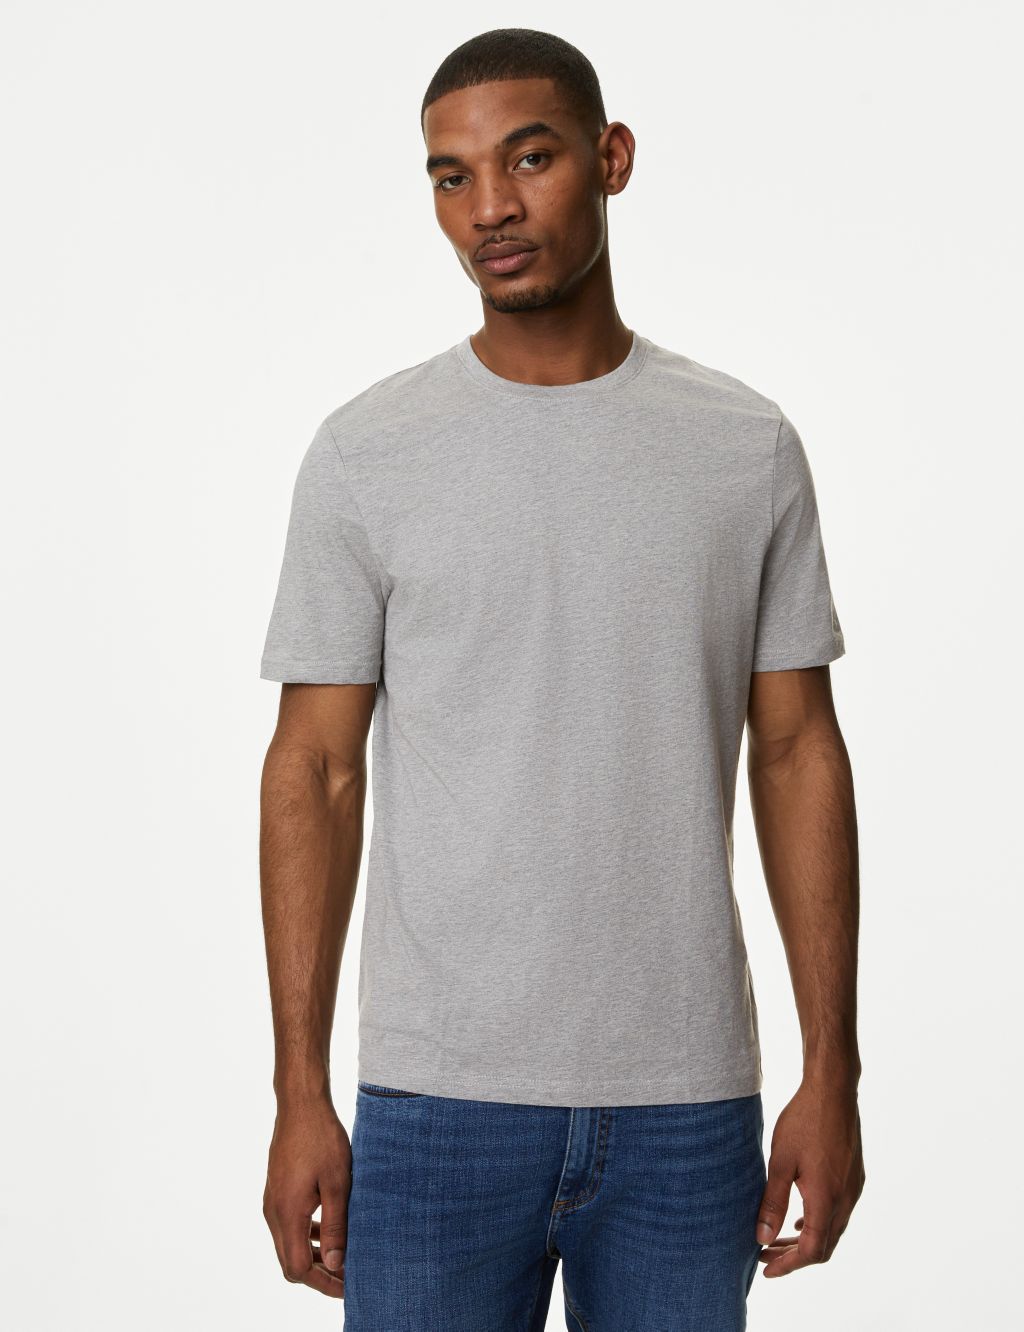 Slim Fit Pure Cotton Crew Neck T-Shirt image 4